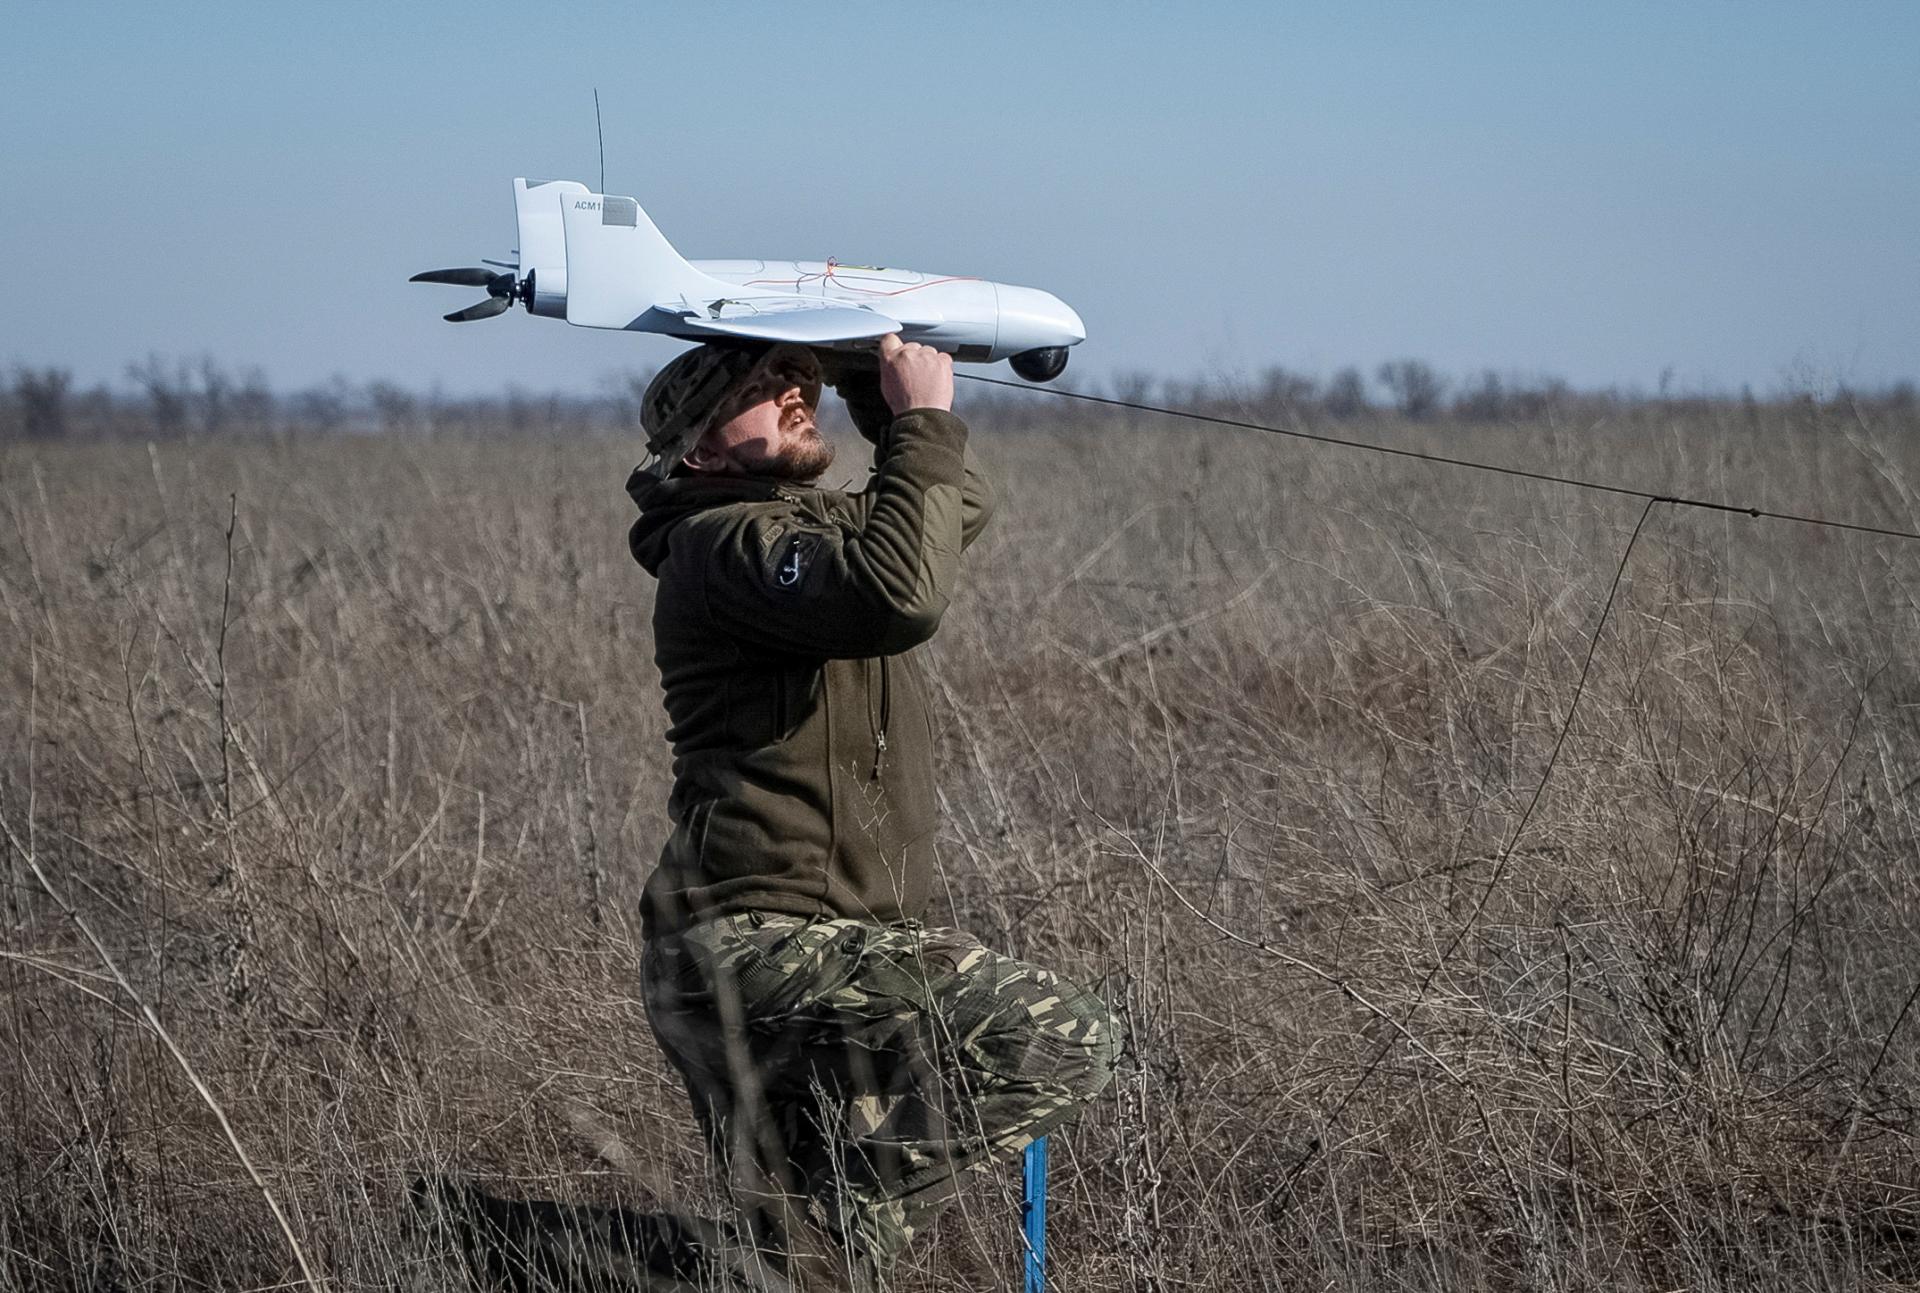 Británia dodá Ukrajine 10-tisíc dronov, oznámil minister obrany v Kyjeve. Londýn vyčlení 325 miliónov libier